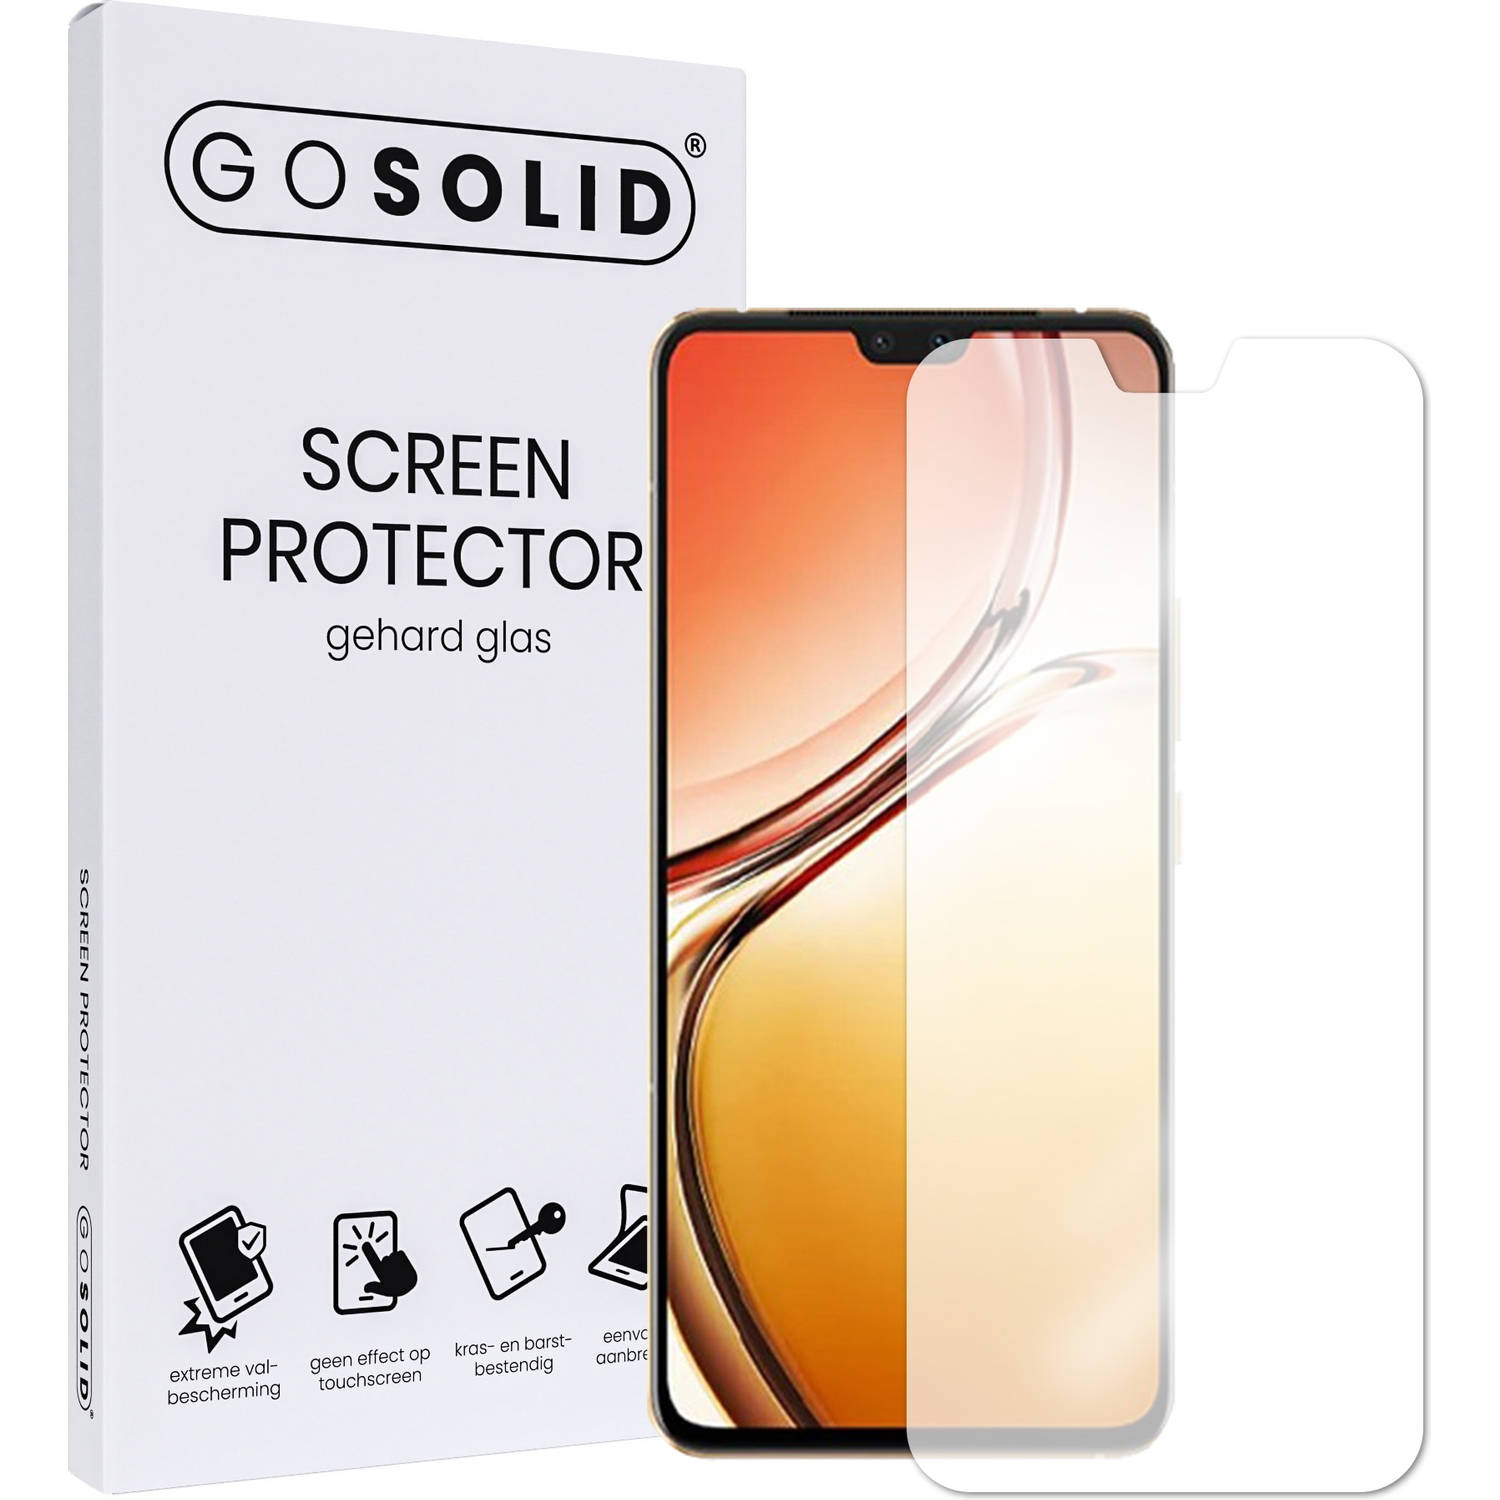 GO SOLID! Screenprotector voor Huawei P Smart Plus 2018 gehard glas